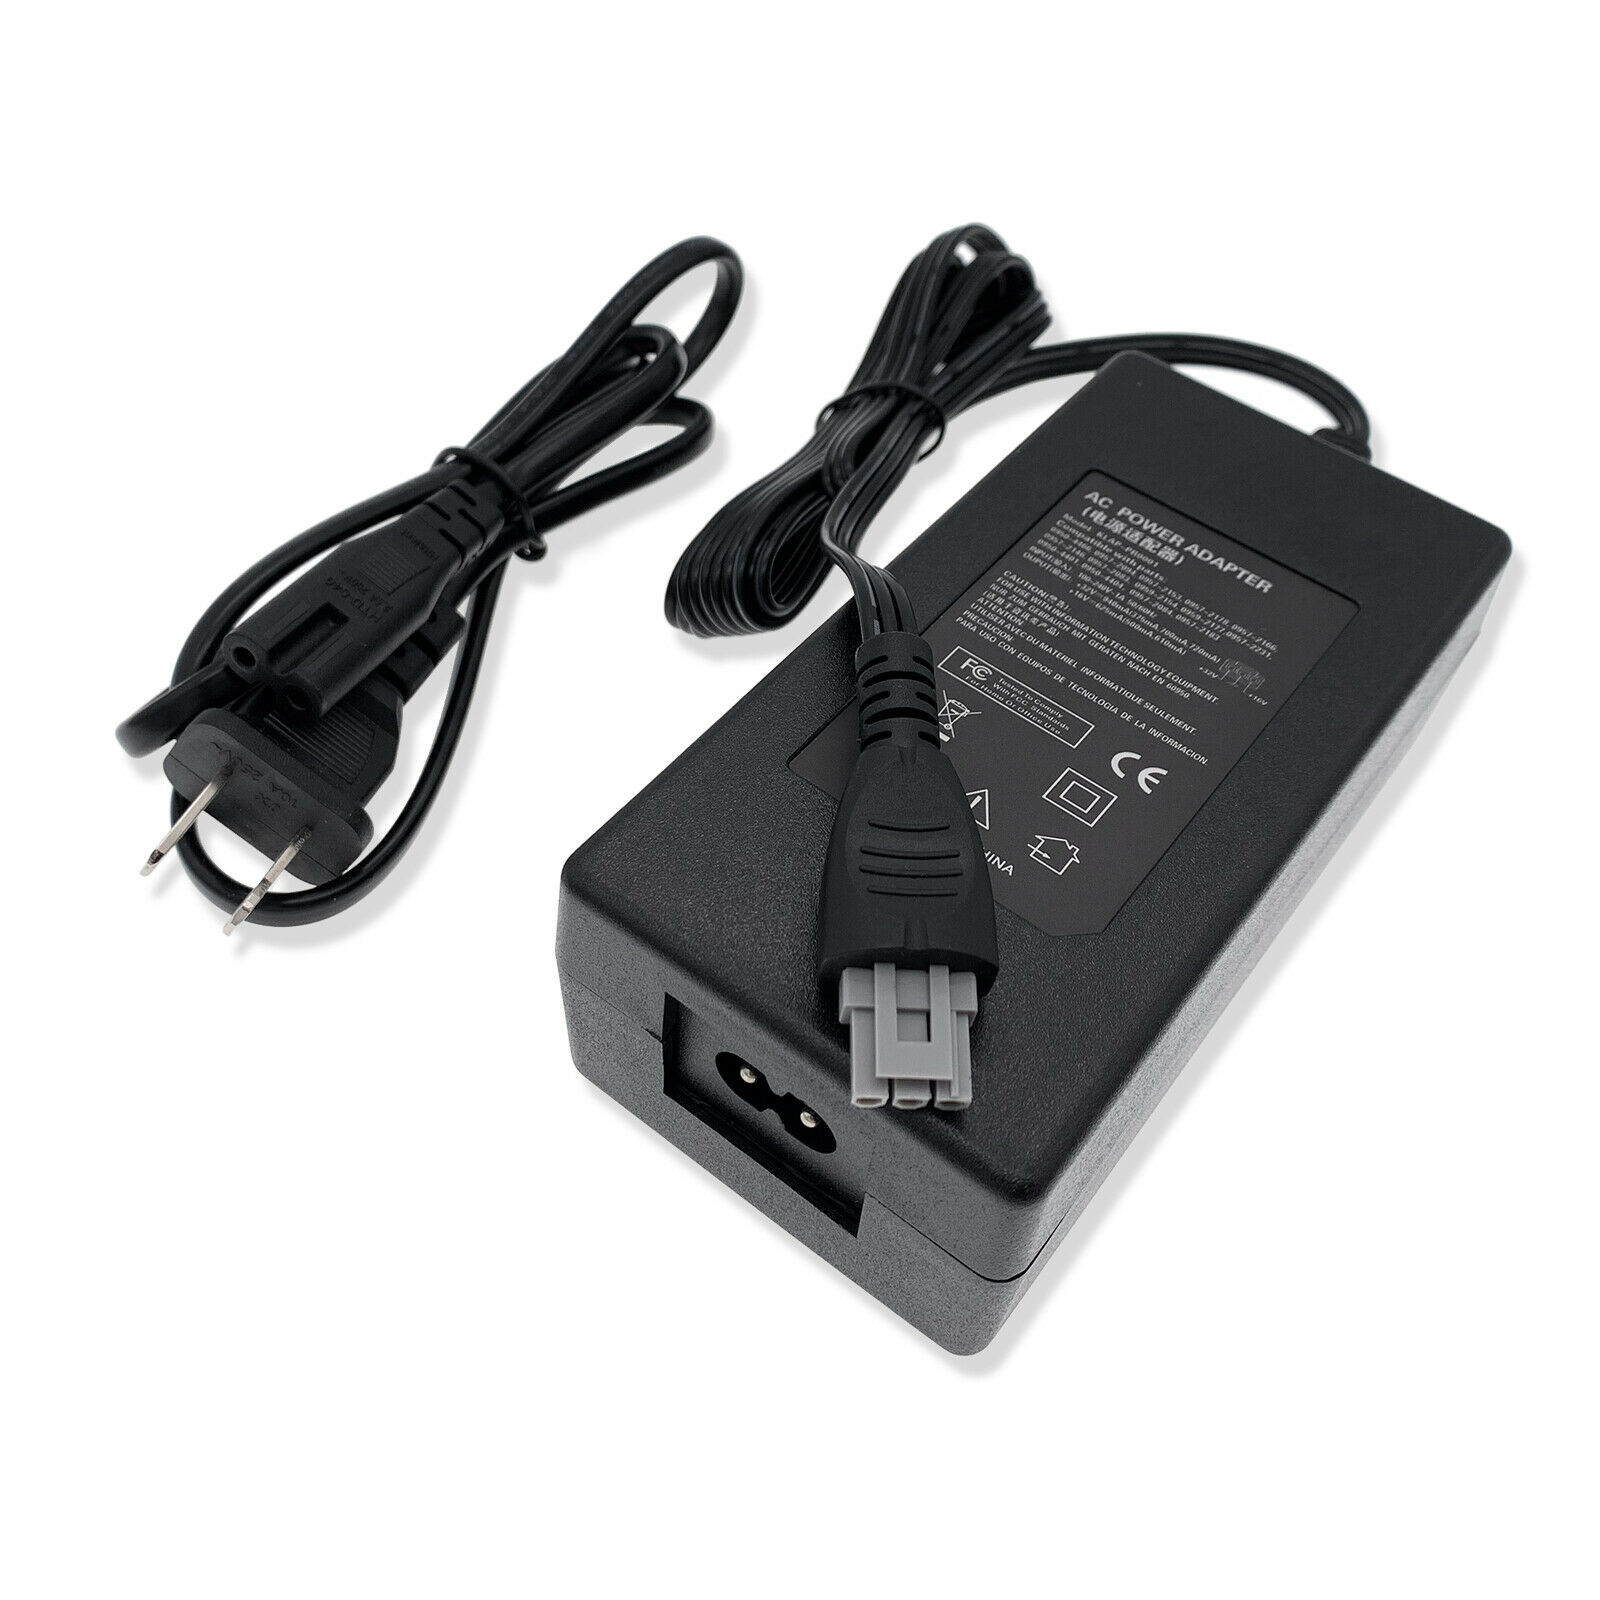 New AC Power Adapter Cord For HP DeskJet F4175 F4180 F4185 F4188 F4190 Printer N